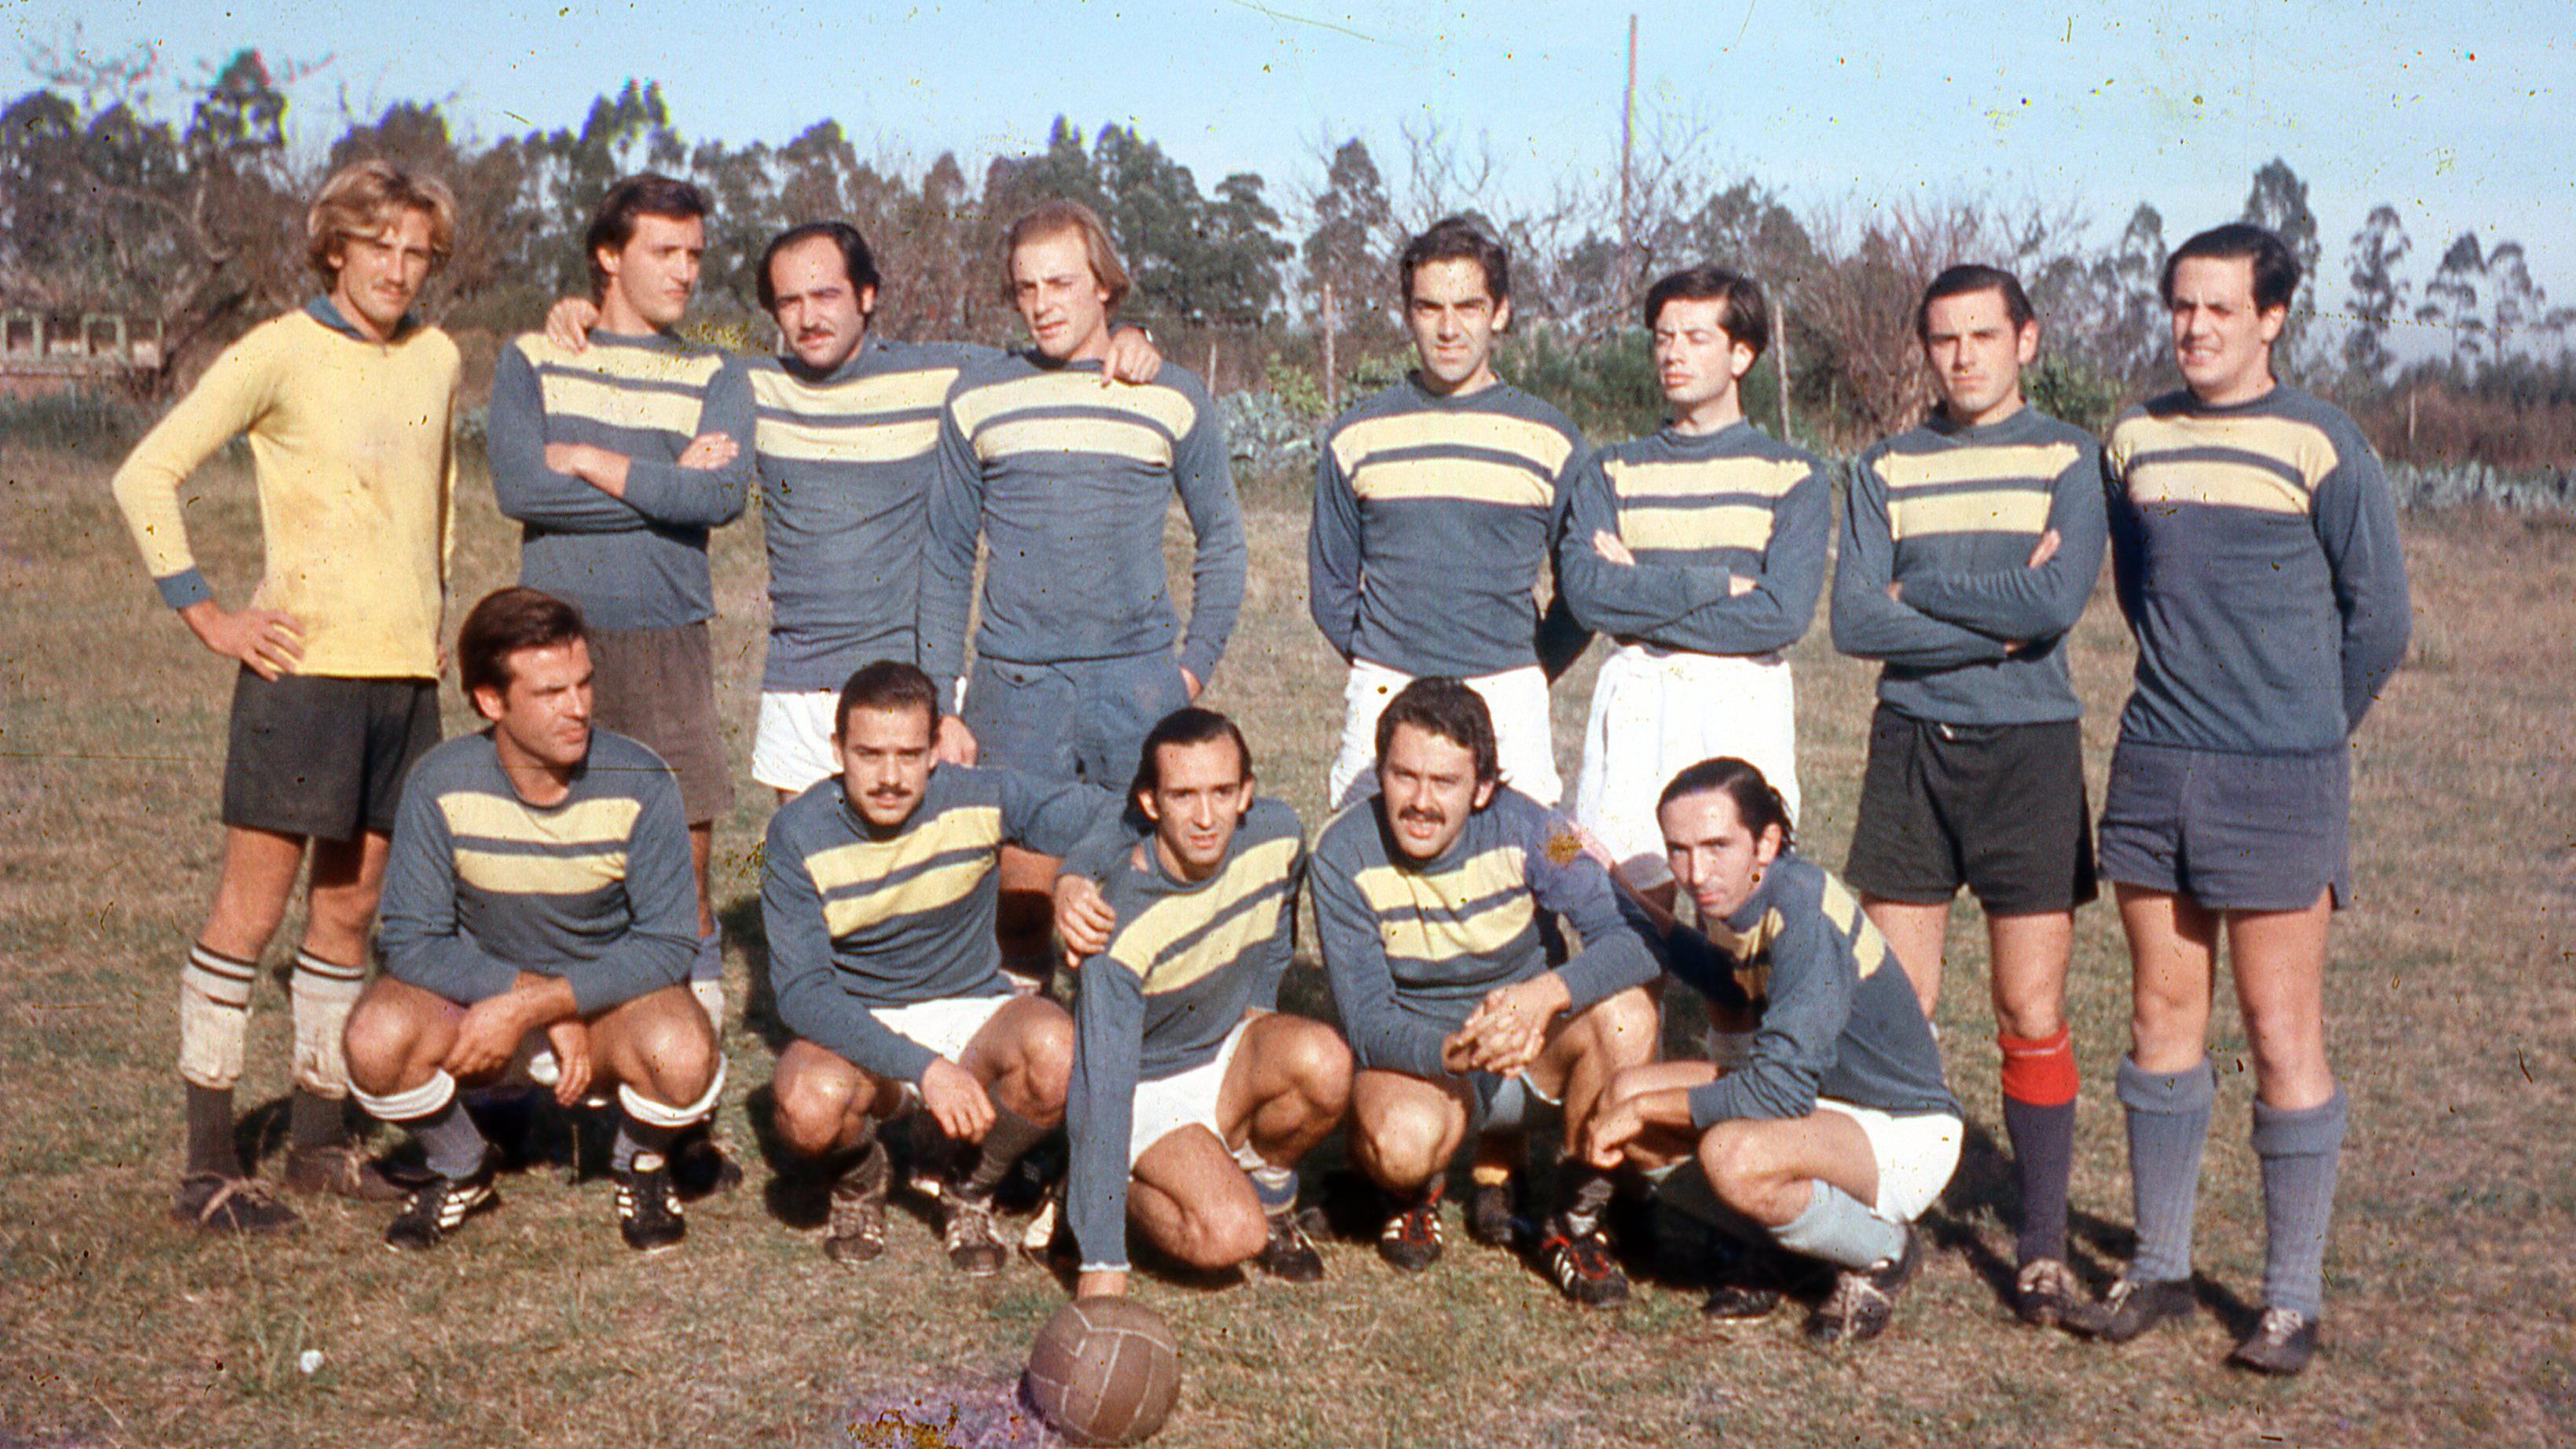 Los jugadores del Loyola Fútbol Club posando para la foto uniformados y con la pelota en el centro.